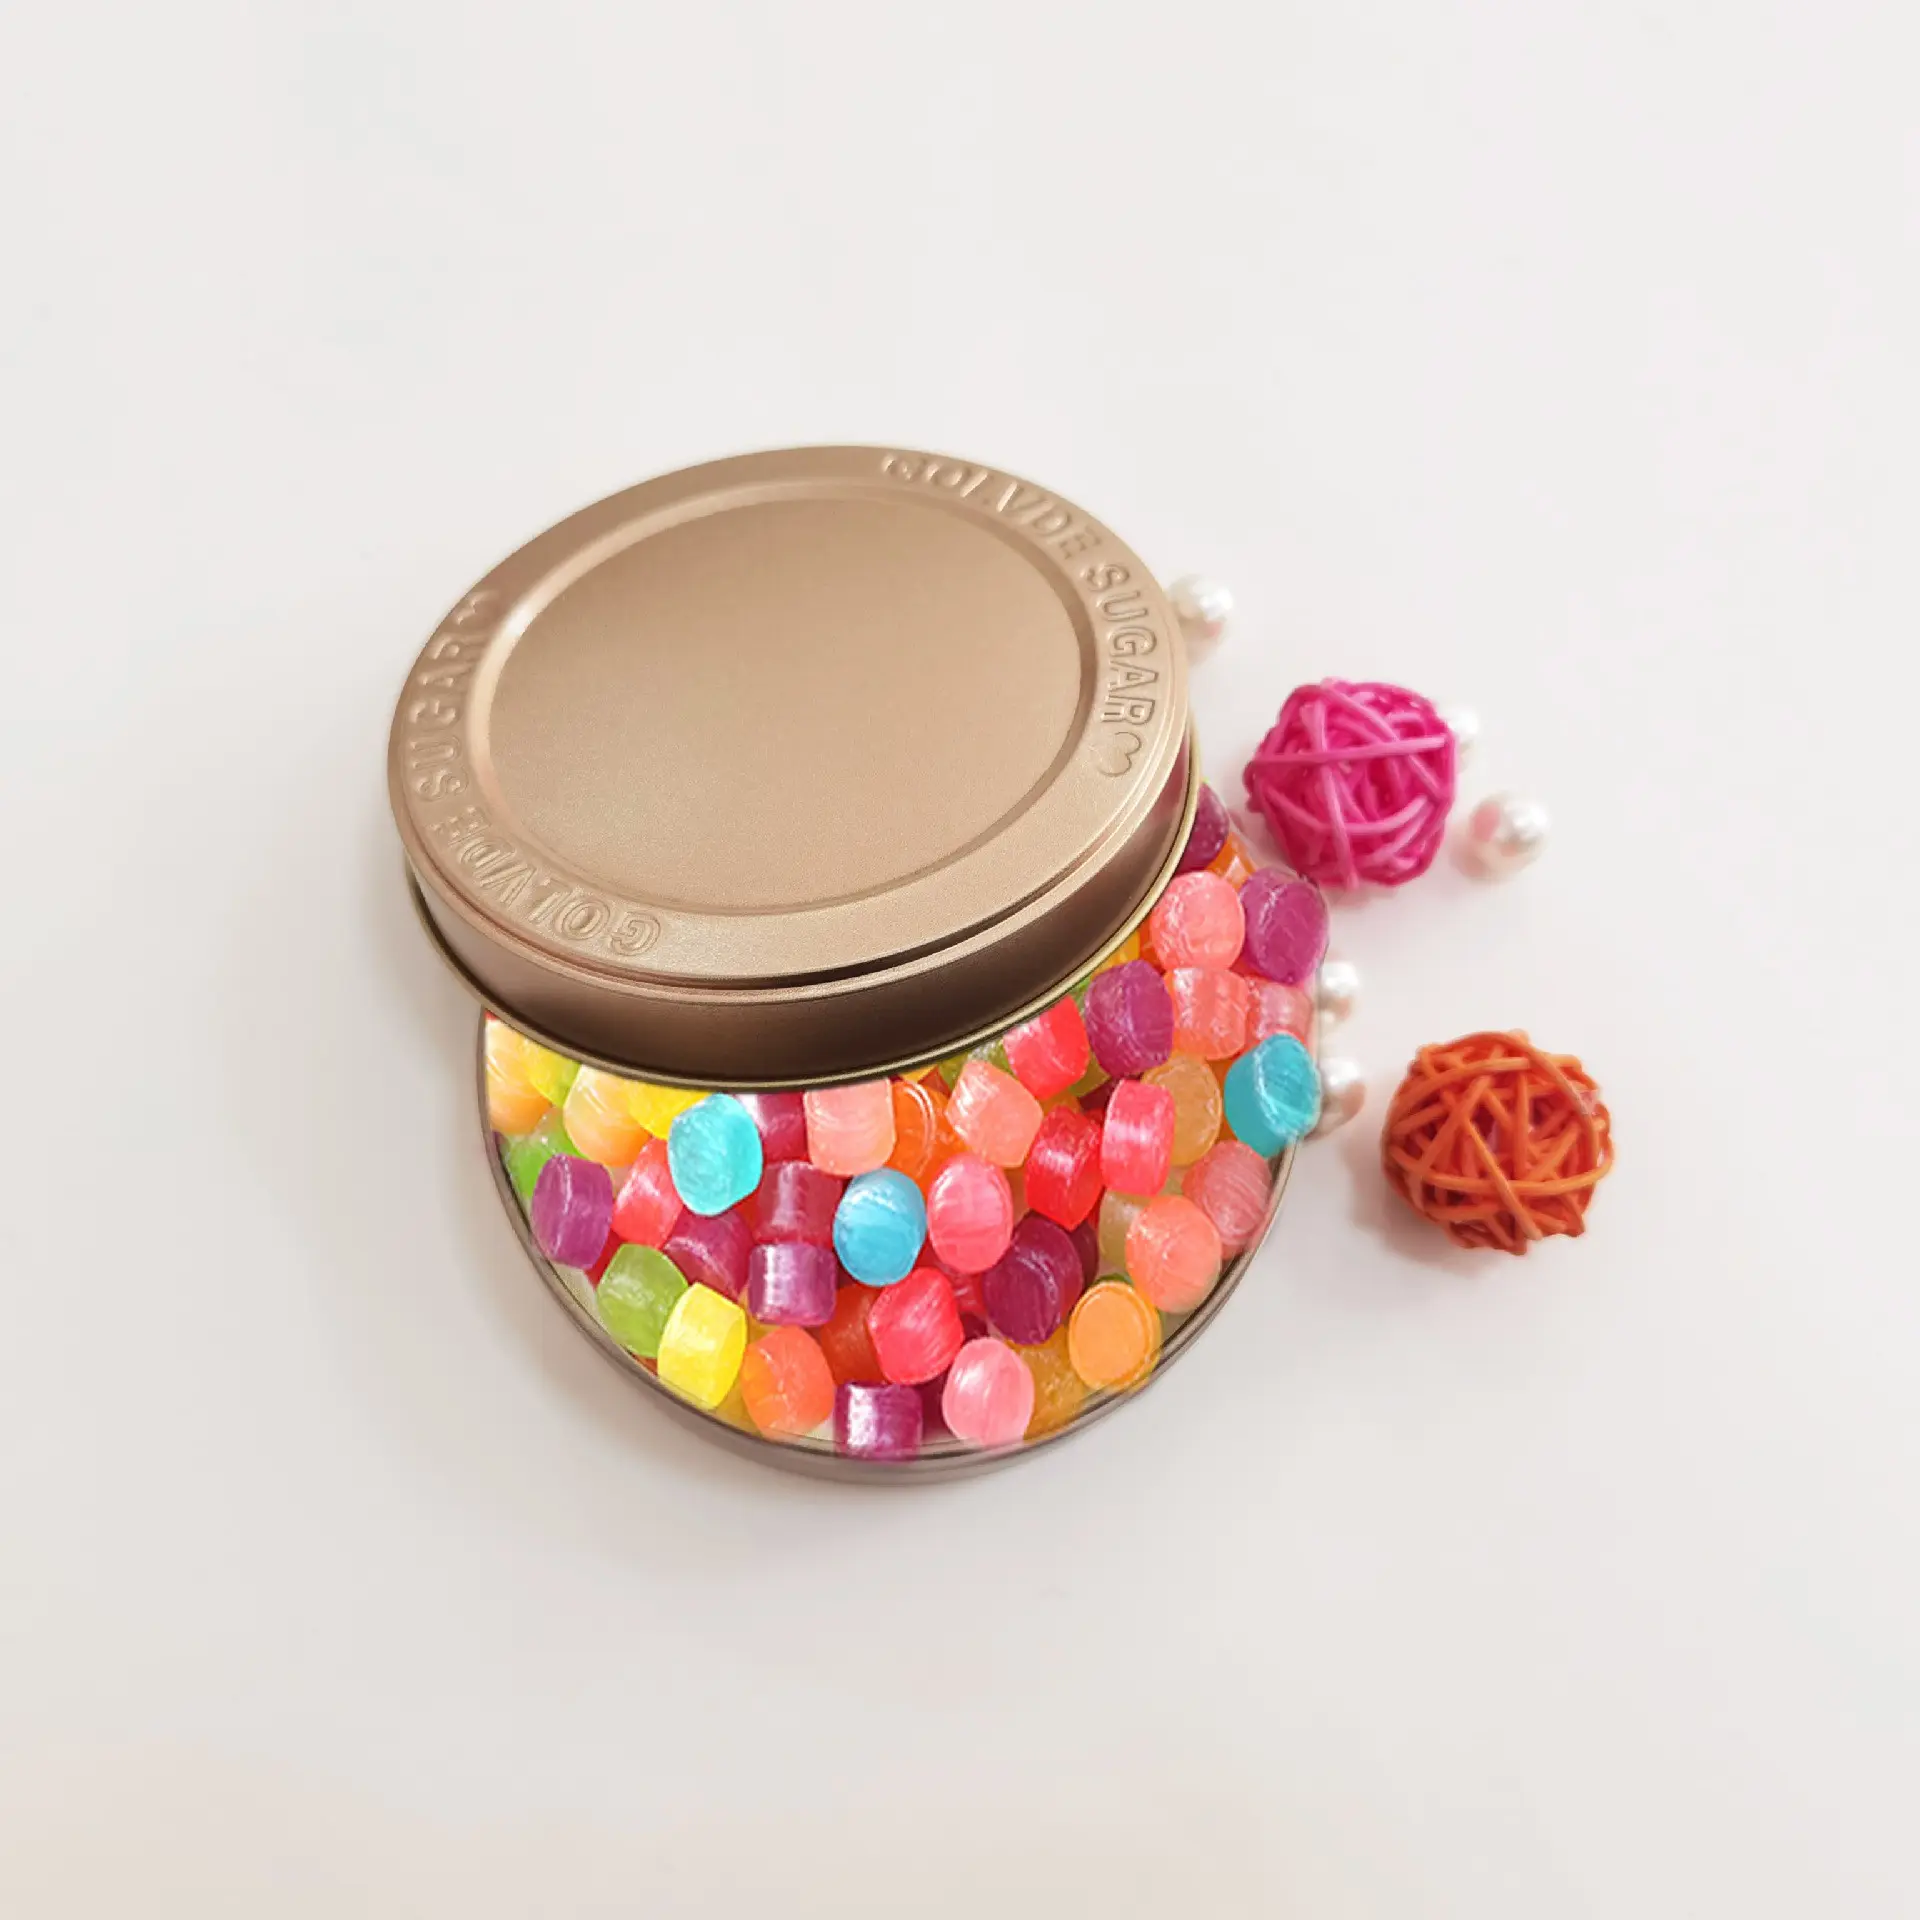 Caja de lata de caramelo dorada redonda en stock al por mayor, caja de lata vacía para chocolate y dulces u otra caja de almacenamiento pequeña